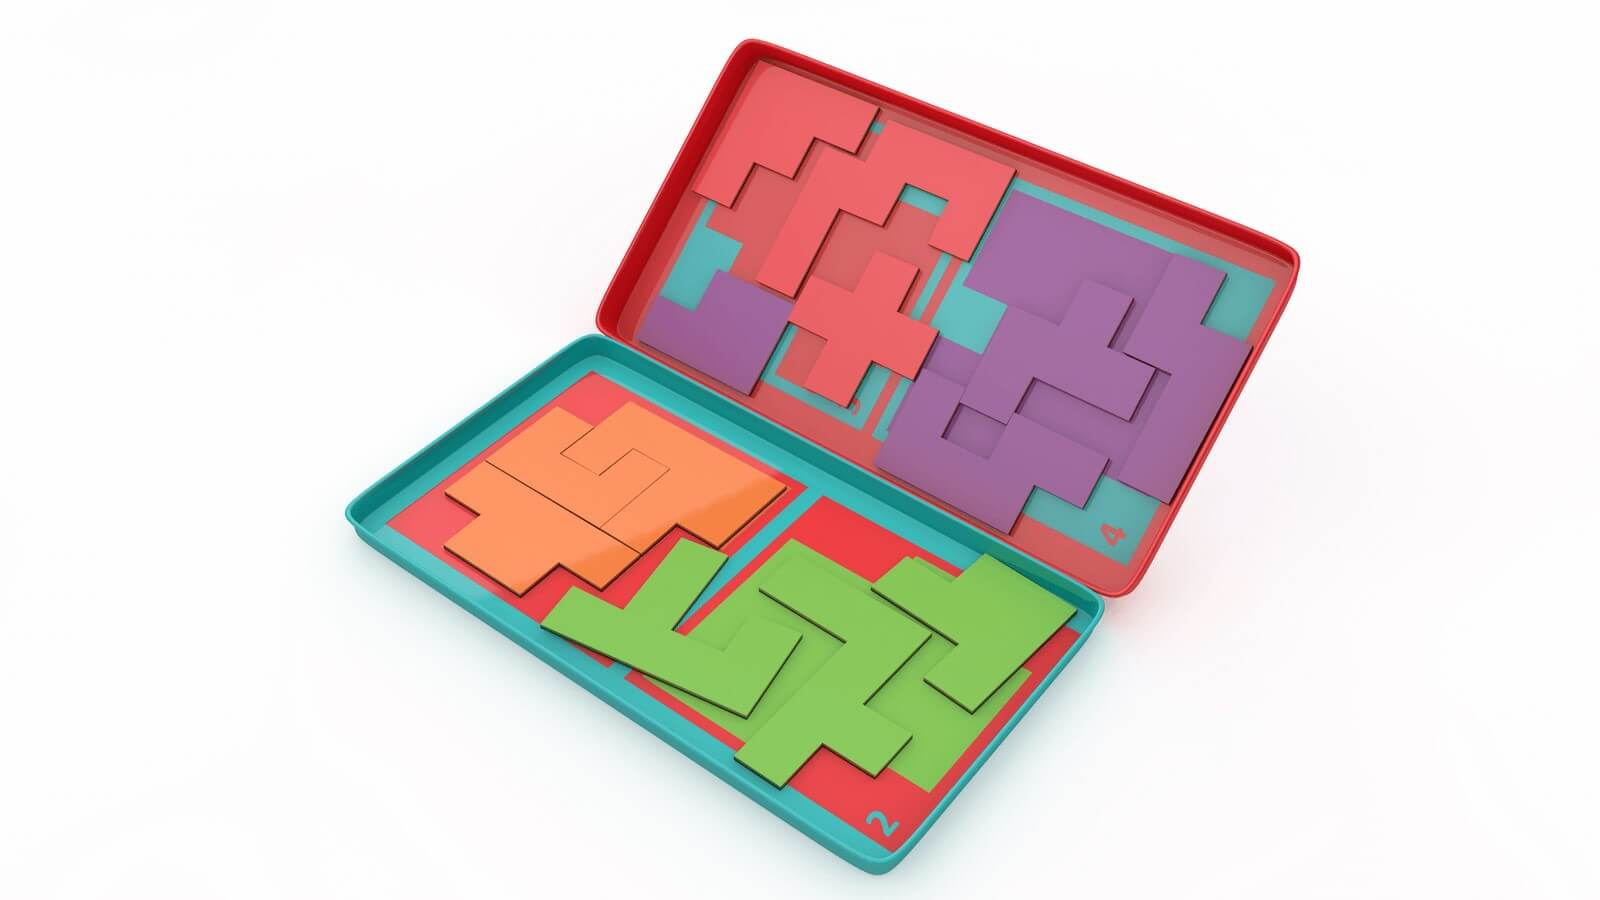 Jogo Lógica Para Crianças Jogo Puzzle Com Jogos Mover Palito imagem  vetorial de kalinicheva_maria@mail.ru© 212498936